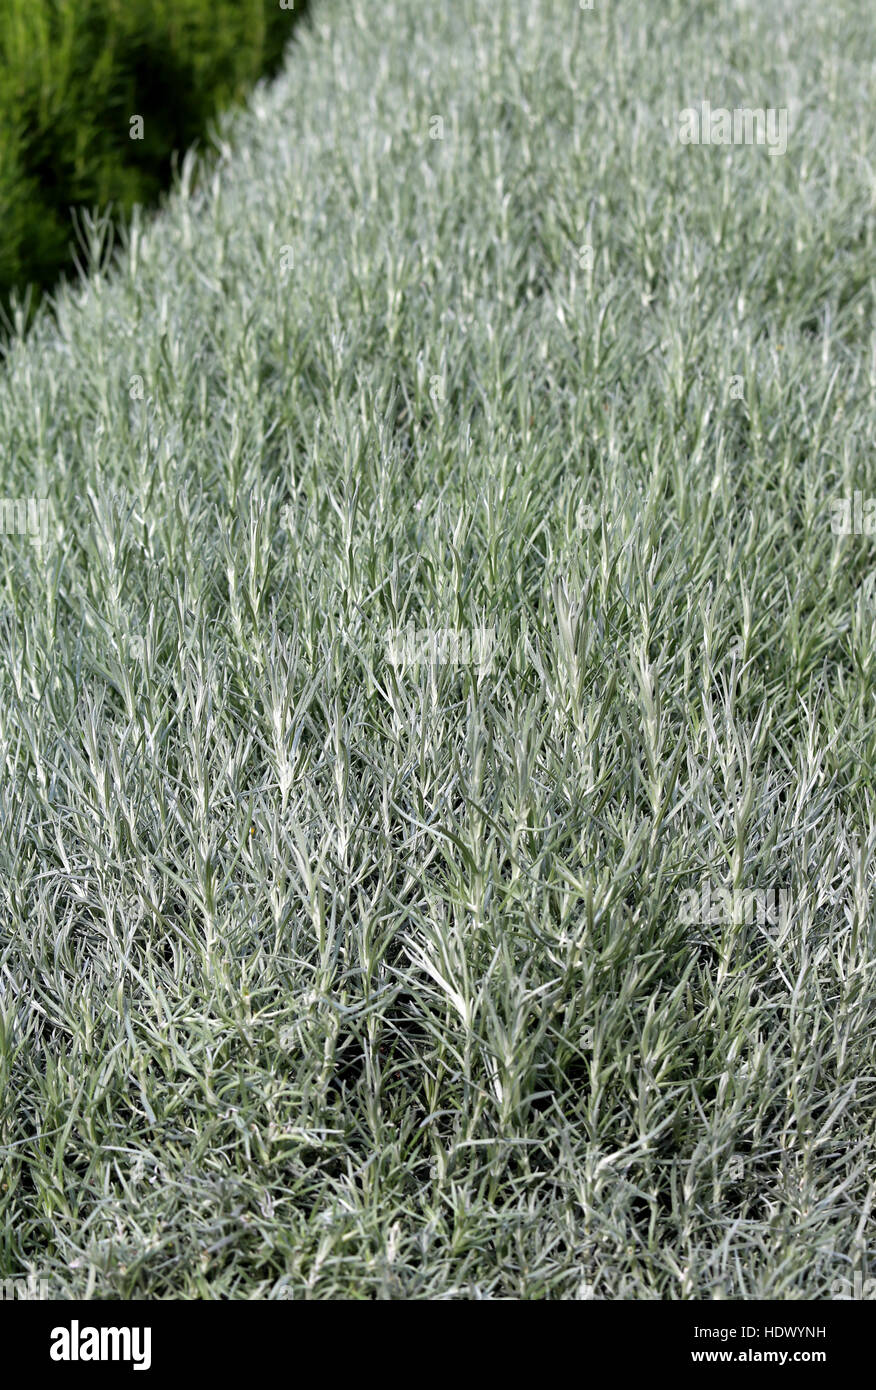 Inmenso fondo de romero verde aromática planta típica de los países mediterráneos Foto de stock